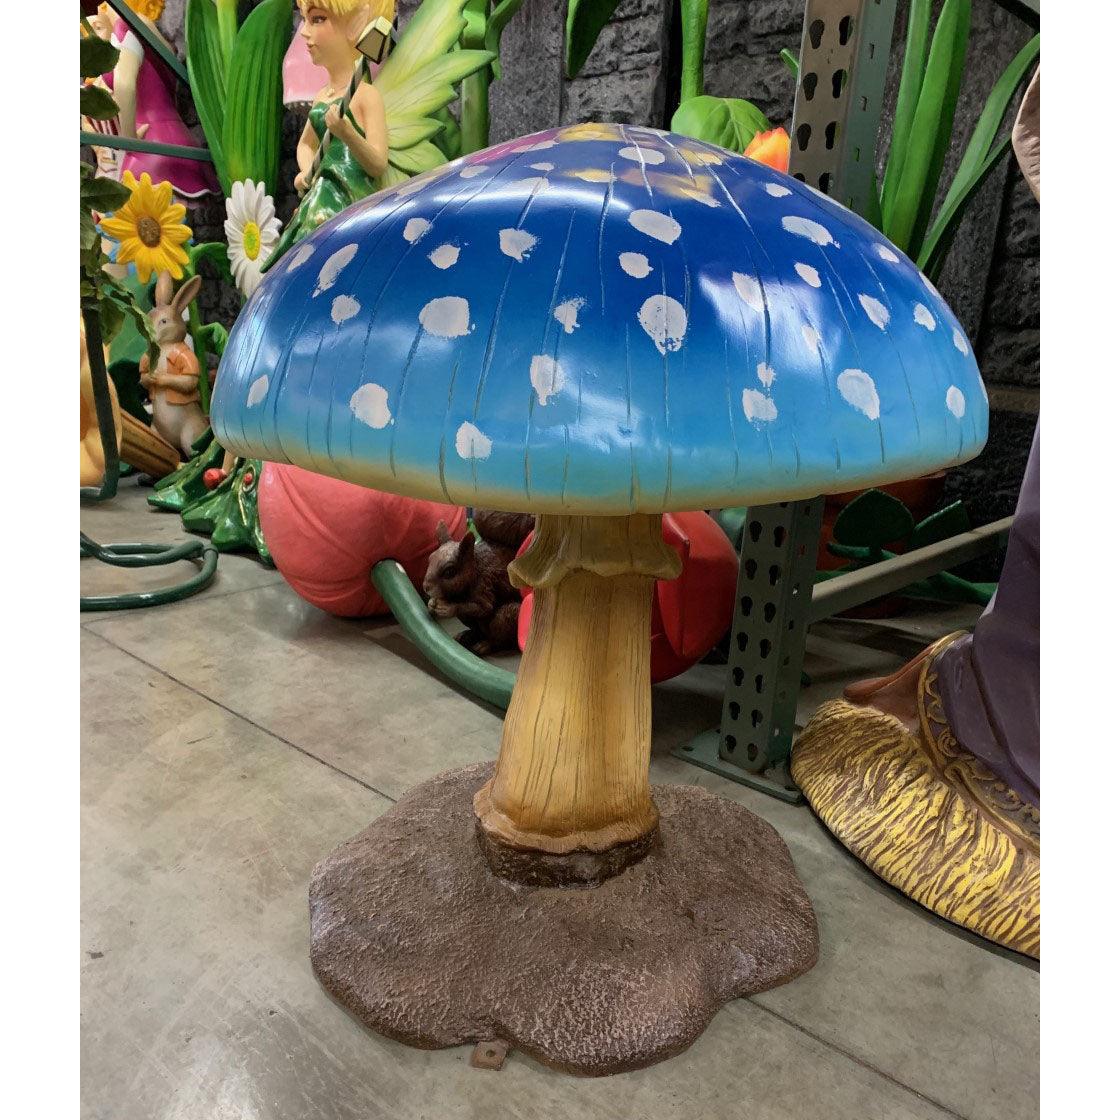 Medium Blue Mushroom Statue